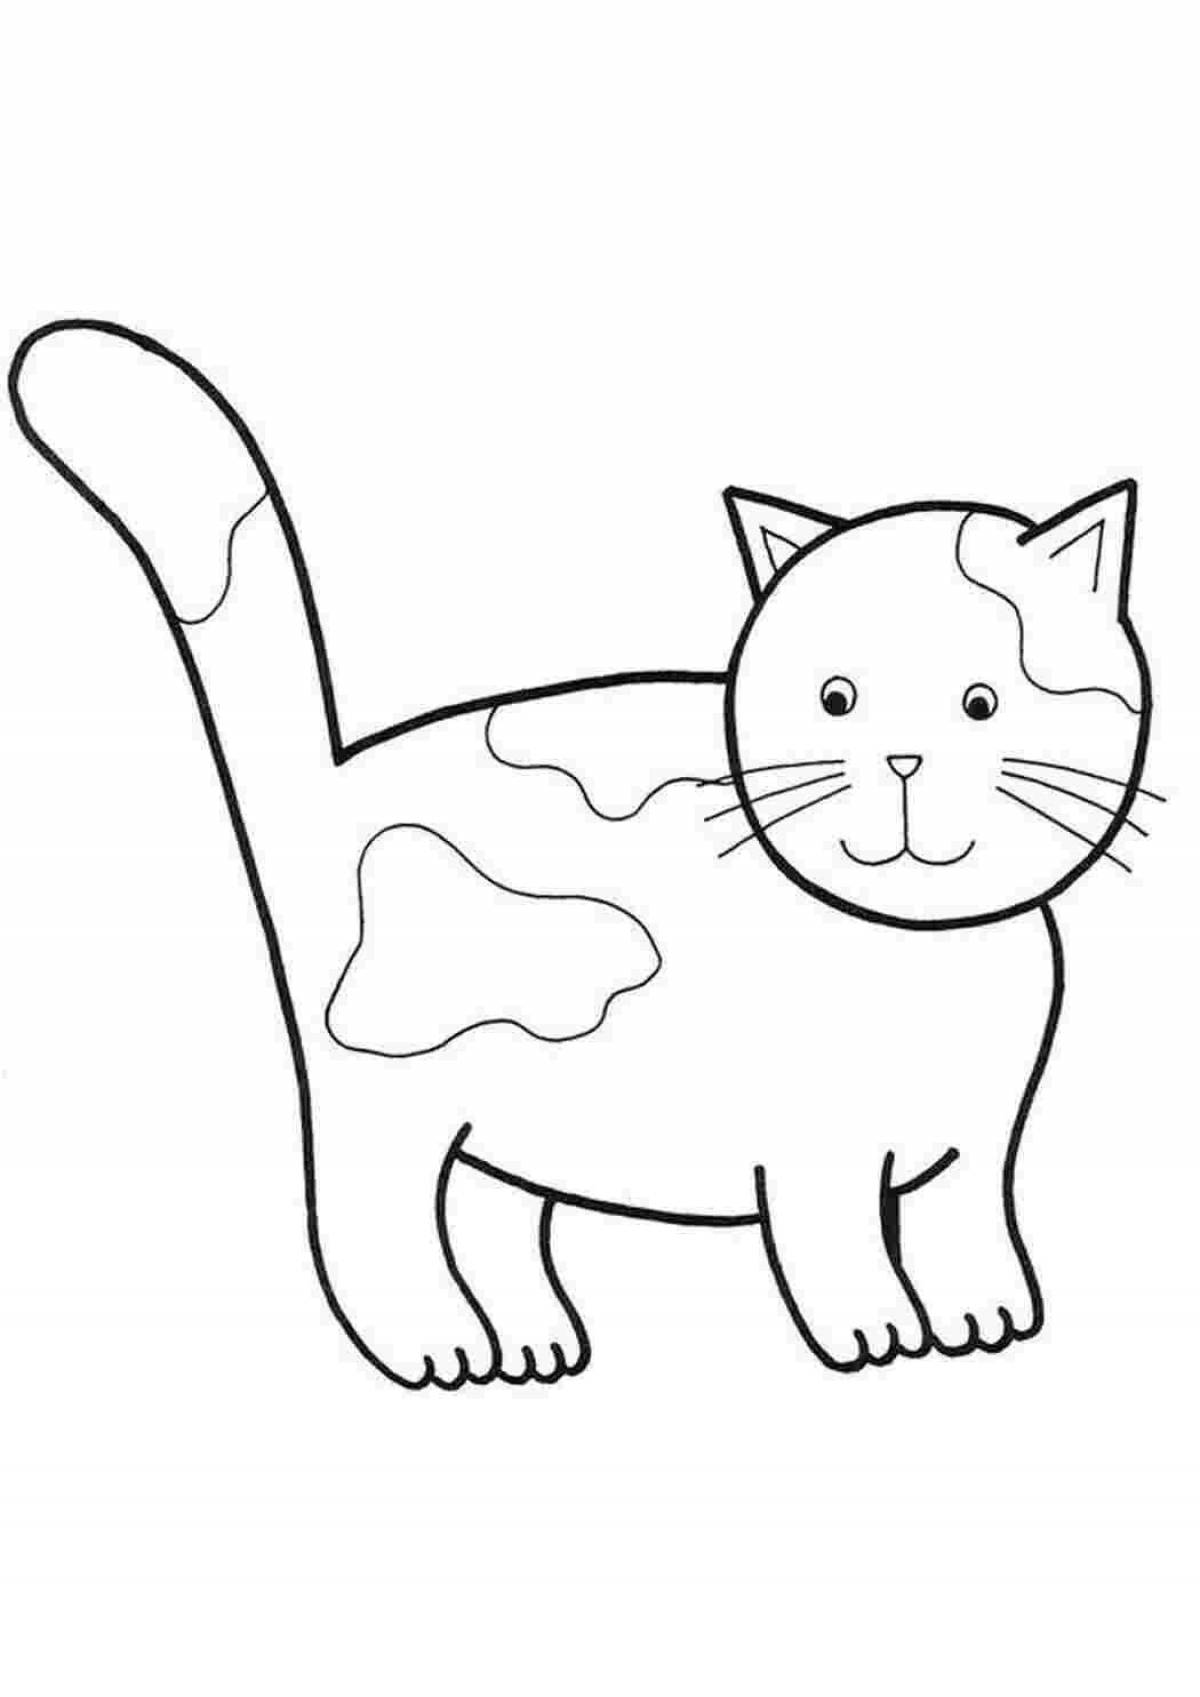 Забавная раскраска кошка простая